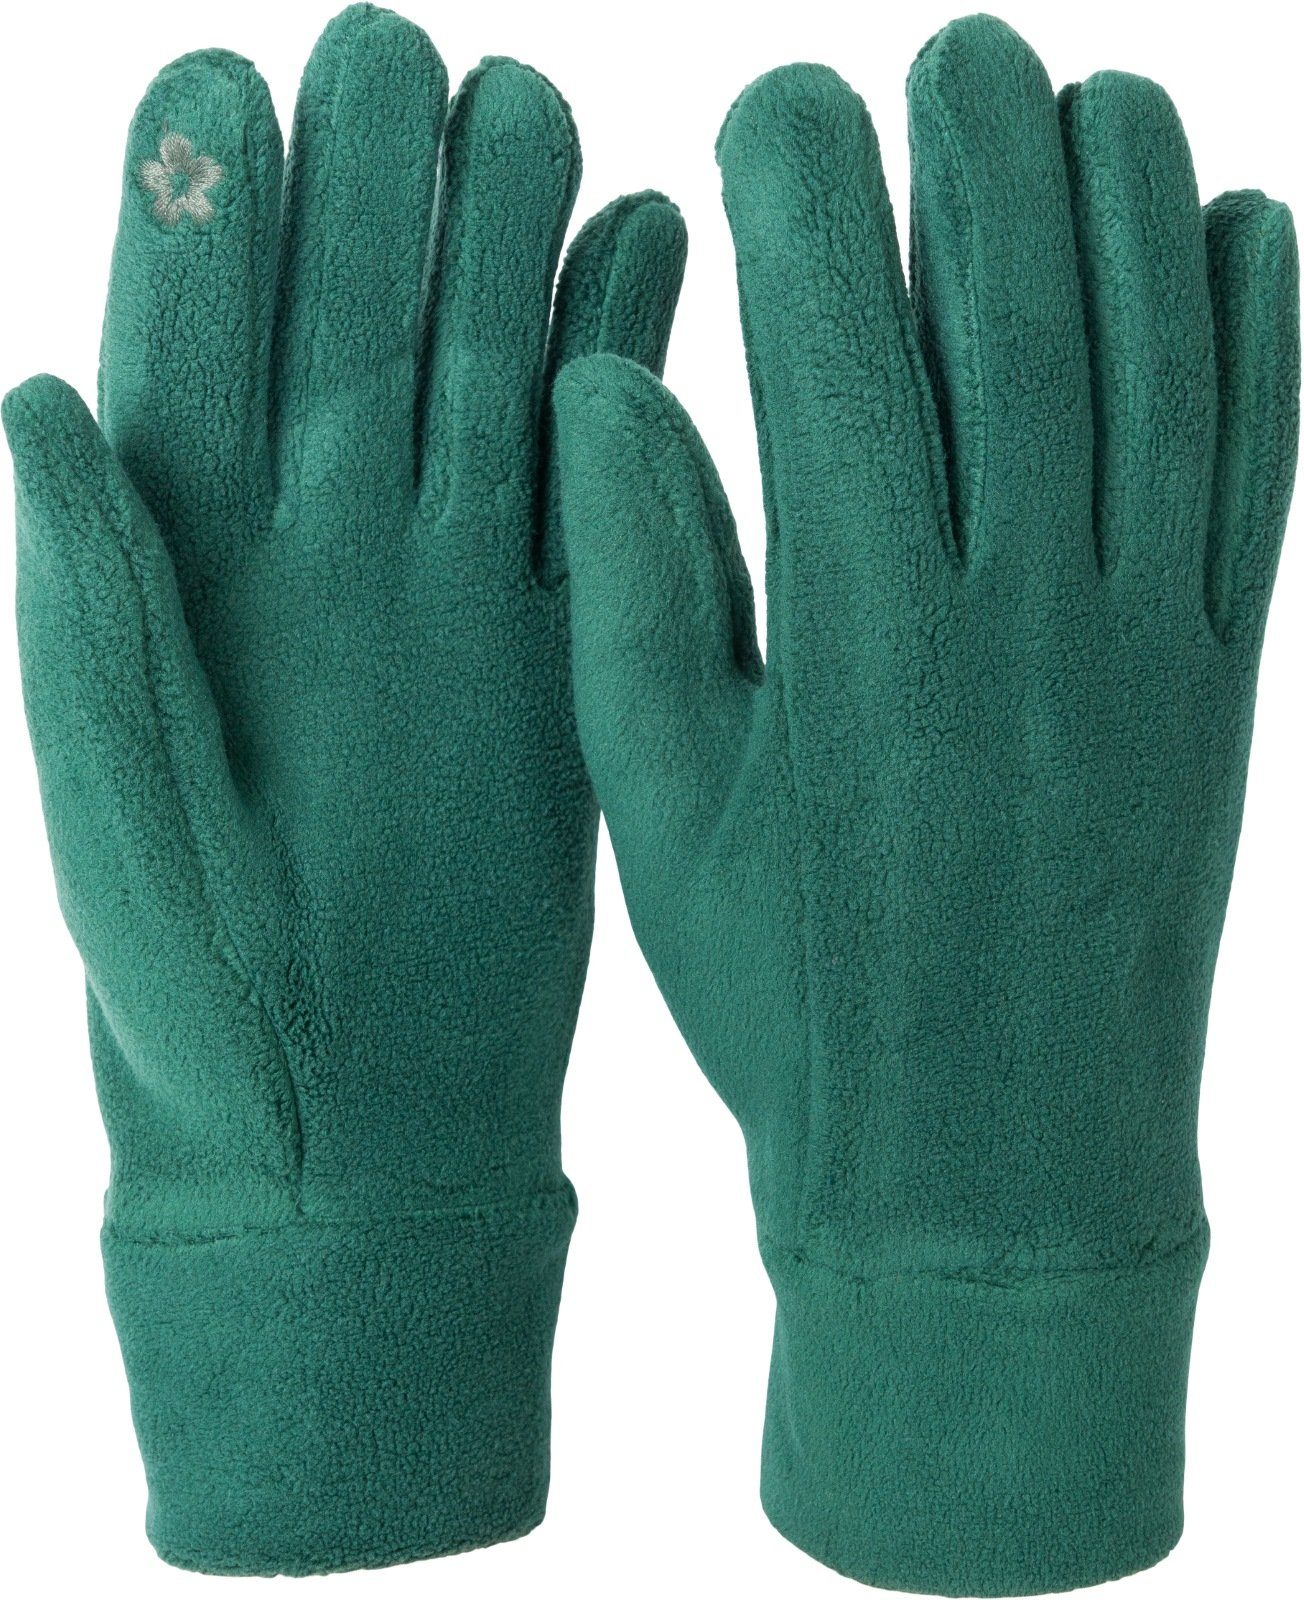 styleBREAKER Fleecehandschuhe Einfarbige Touchscreen Fleece Handschuhe Dunkelgrün | Fleecehandschuhe